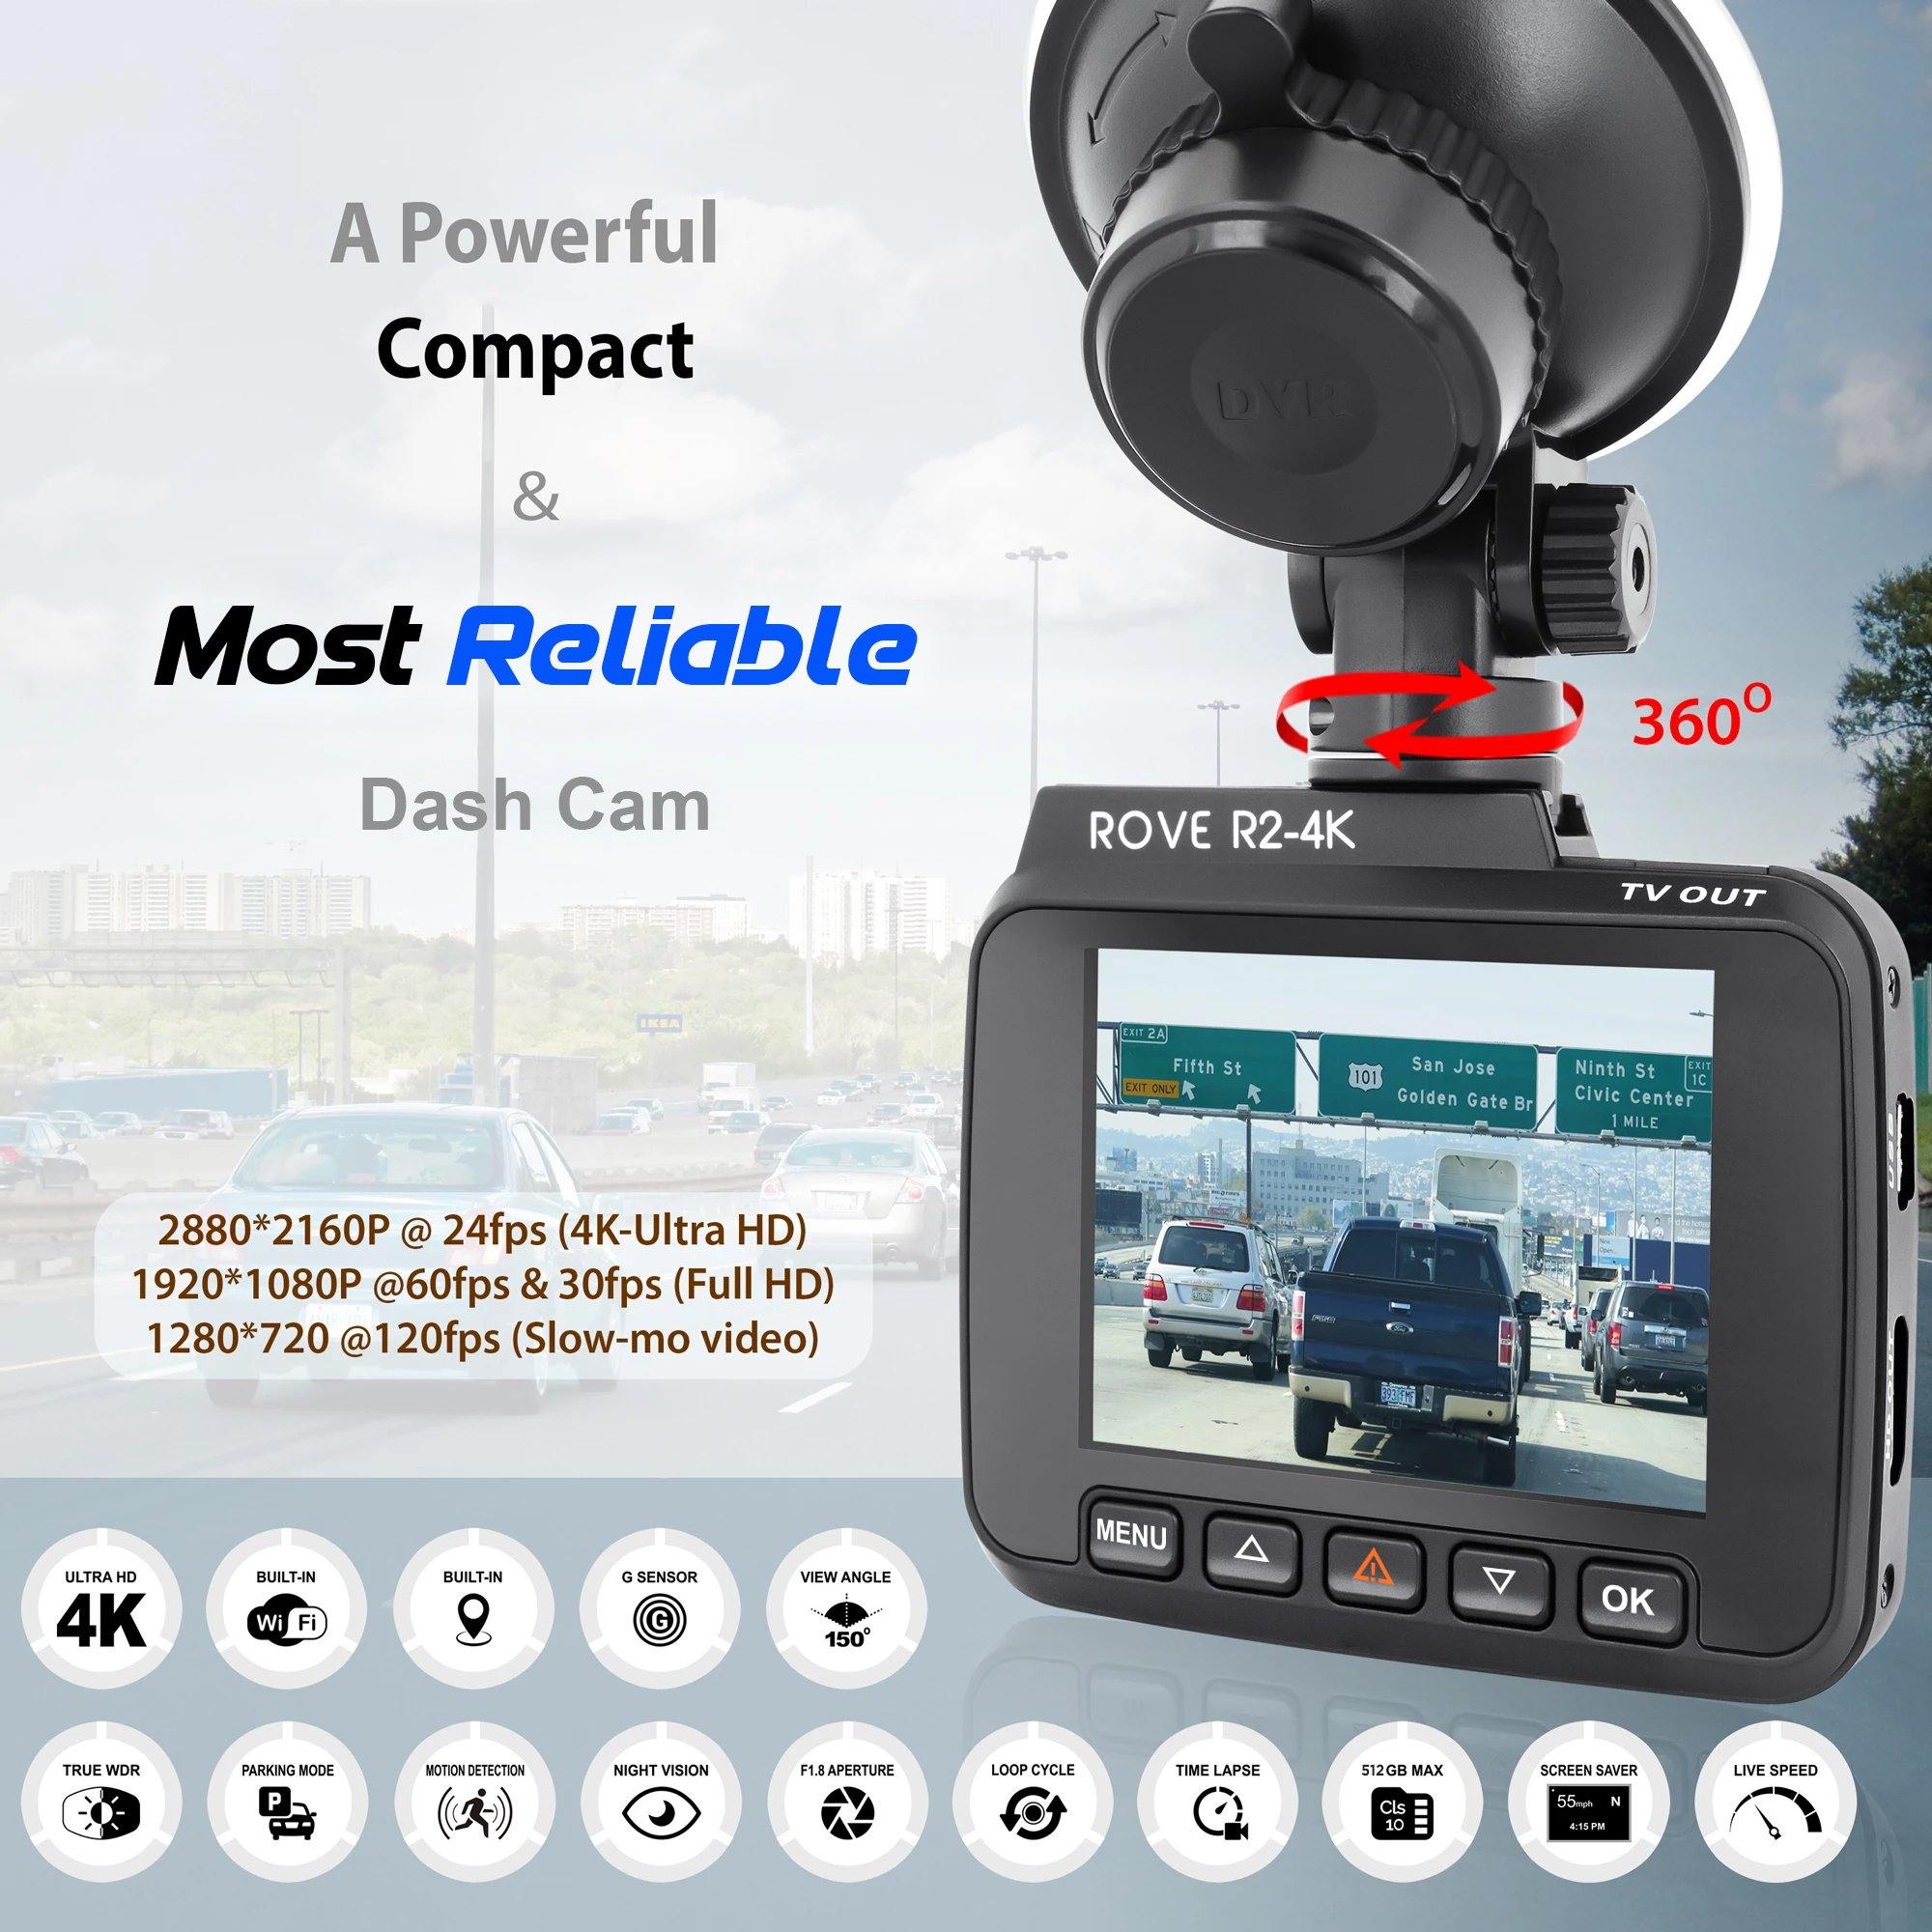 ROVE R2-4K Dash Cam 4K Ultra HD 2160P Car Dash Camera - Built In WiFi & GPS (Refurbished) - ROVE Dash Cam